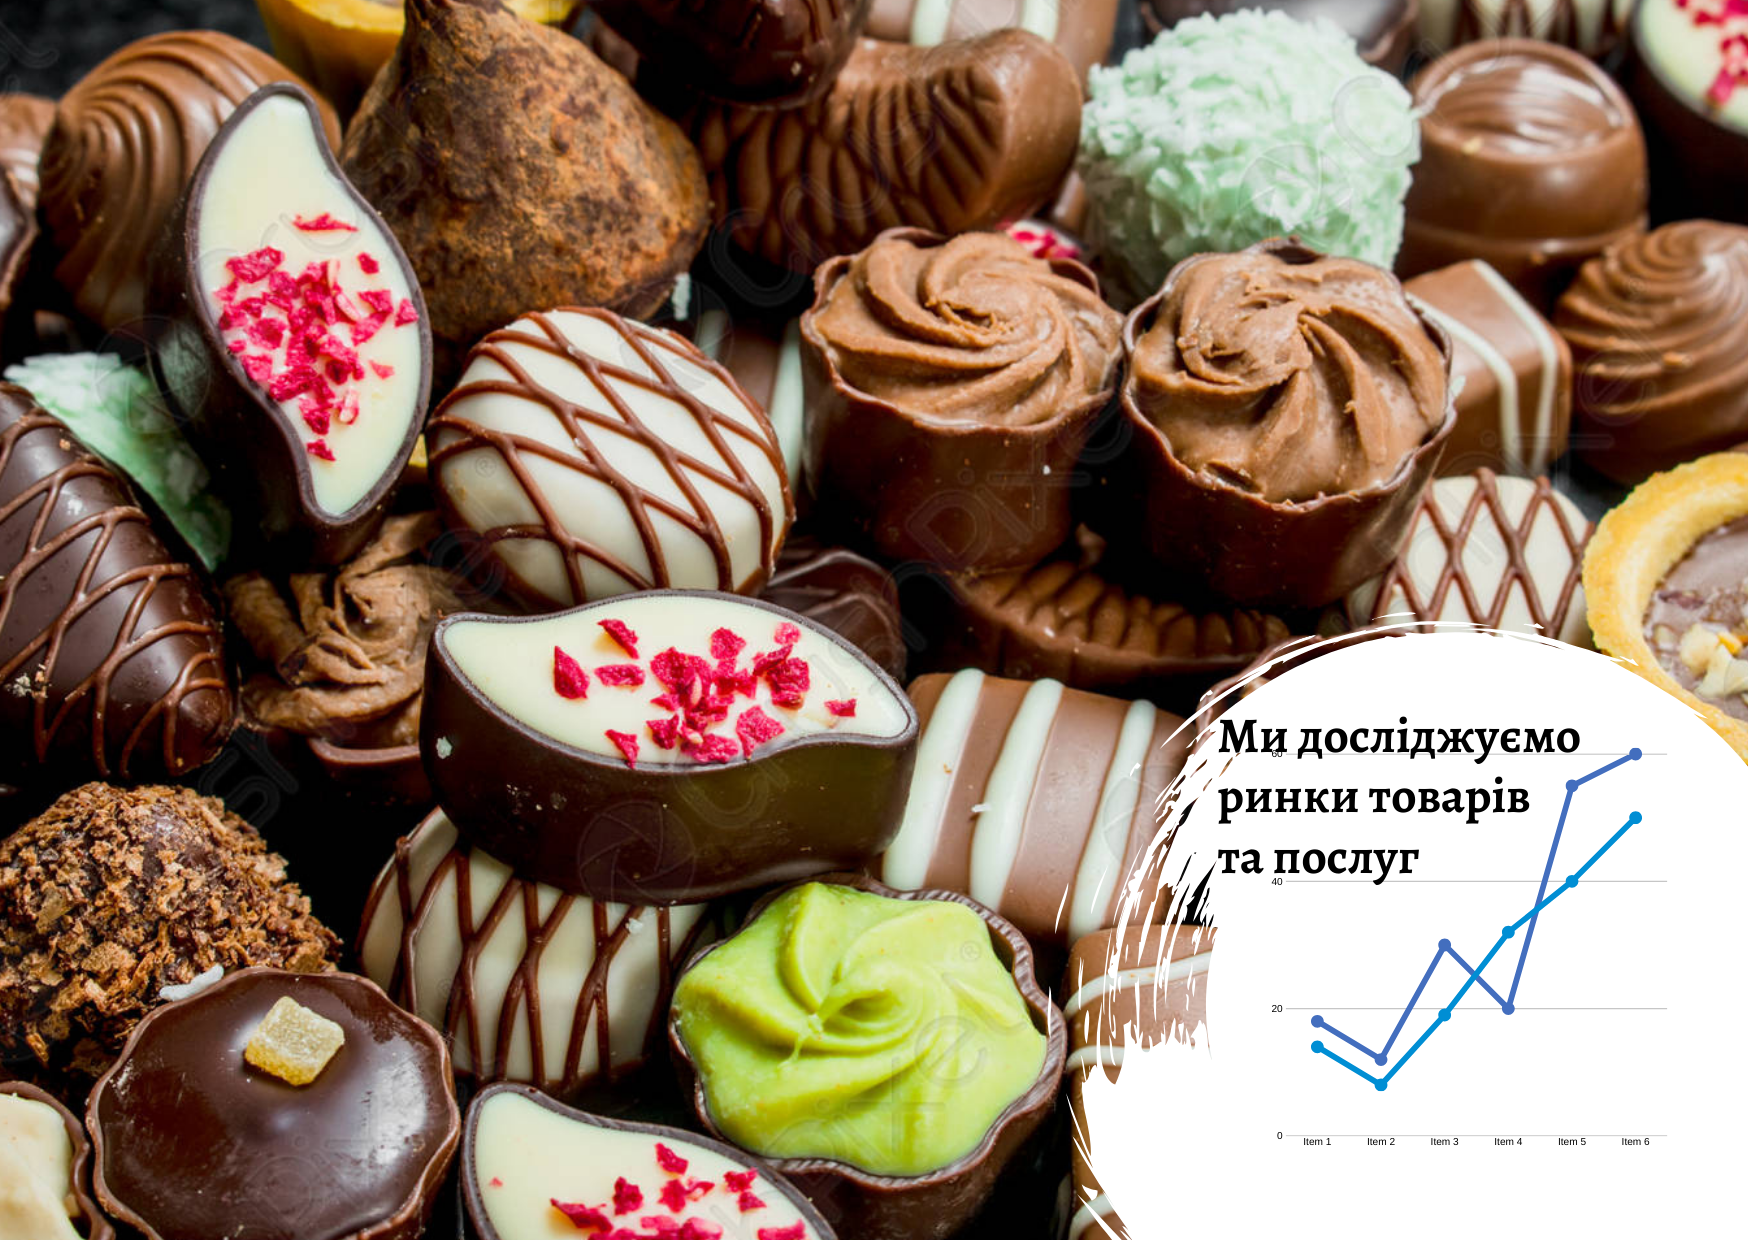 Рынок шоколадных конфет премиум сегмента в Украине: факторы и тренды